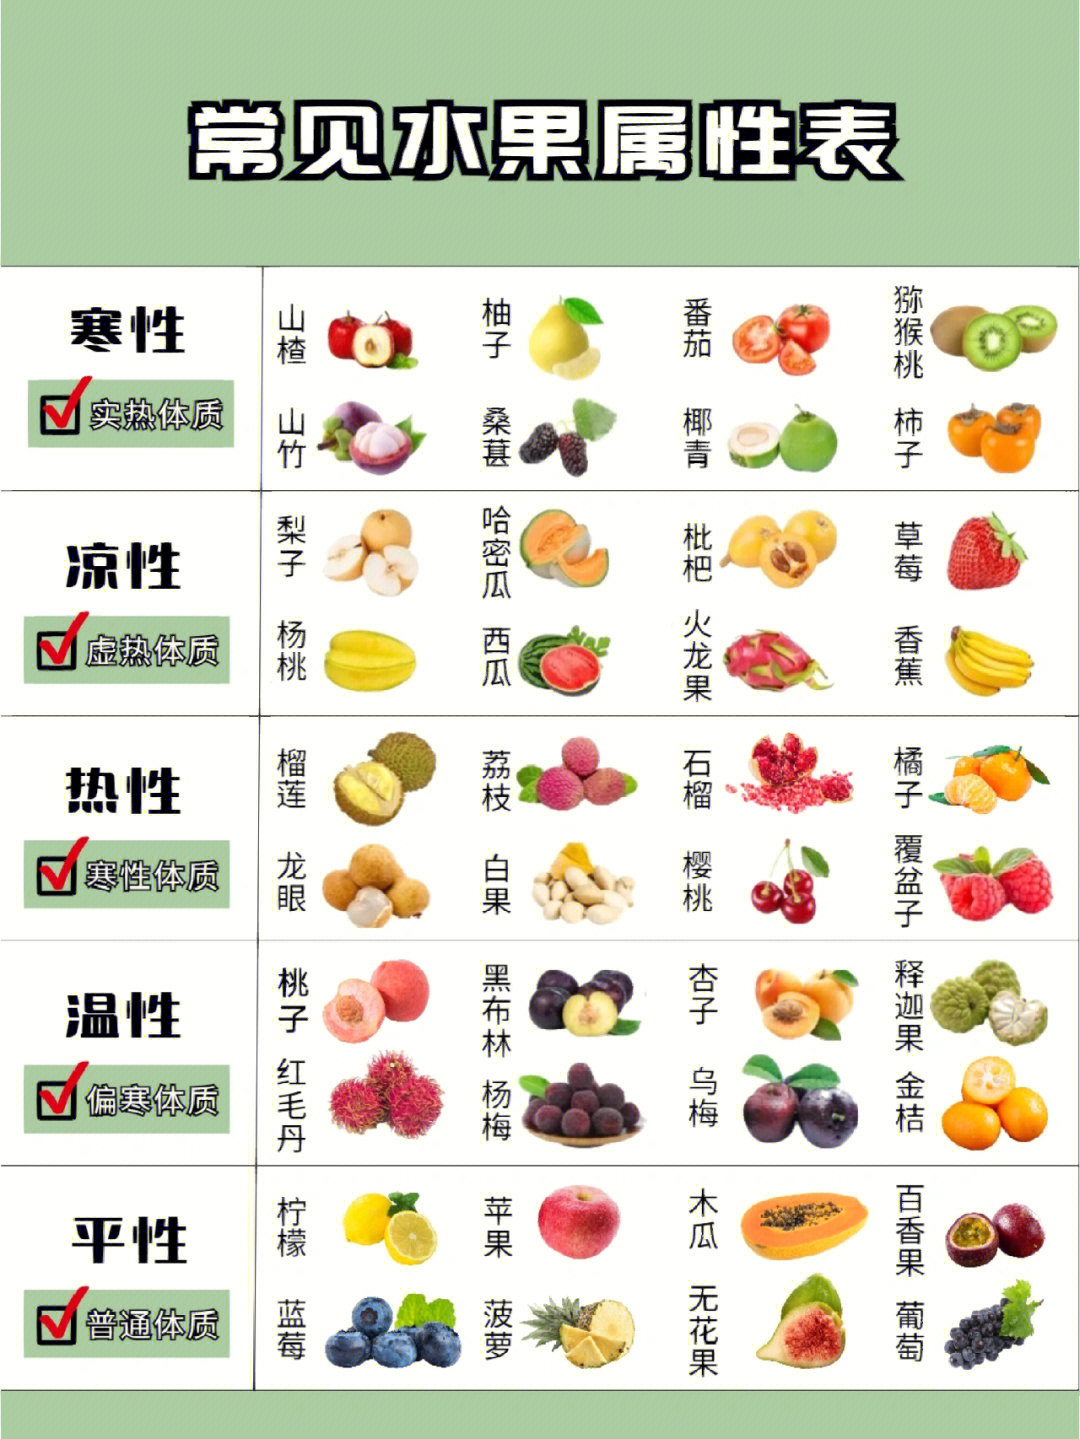 水果属性一览表及图图片